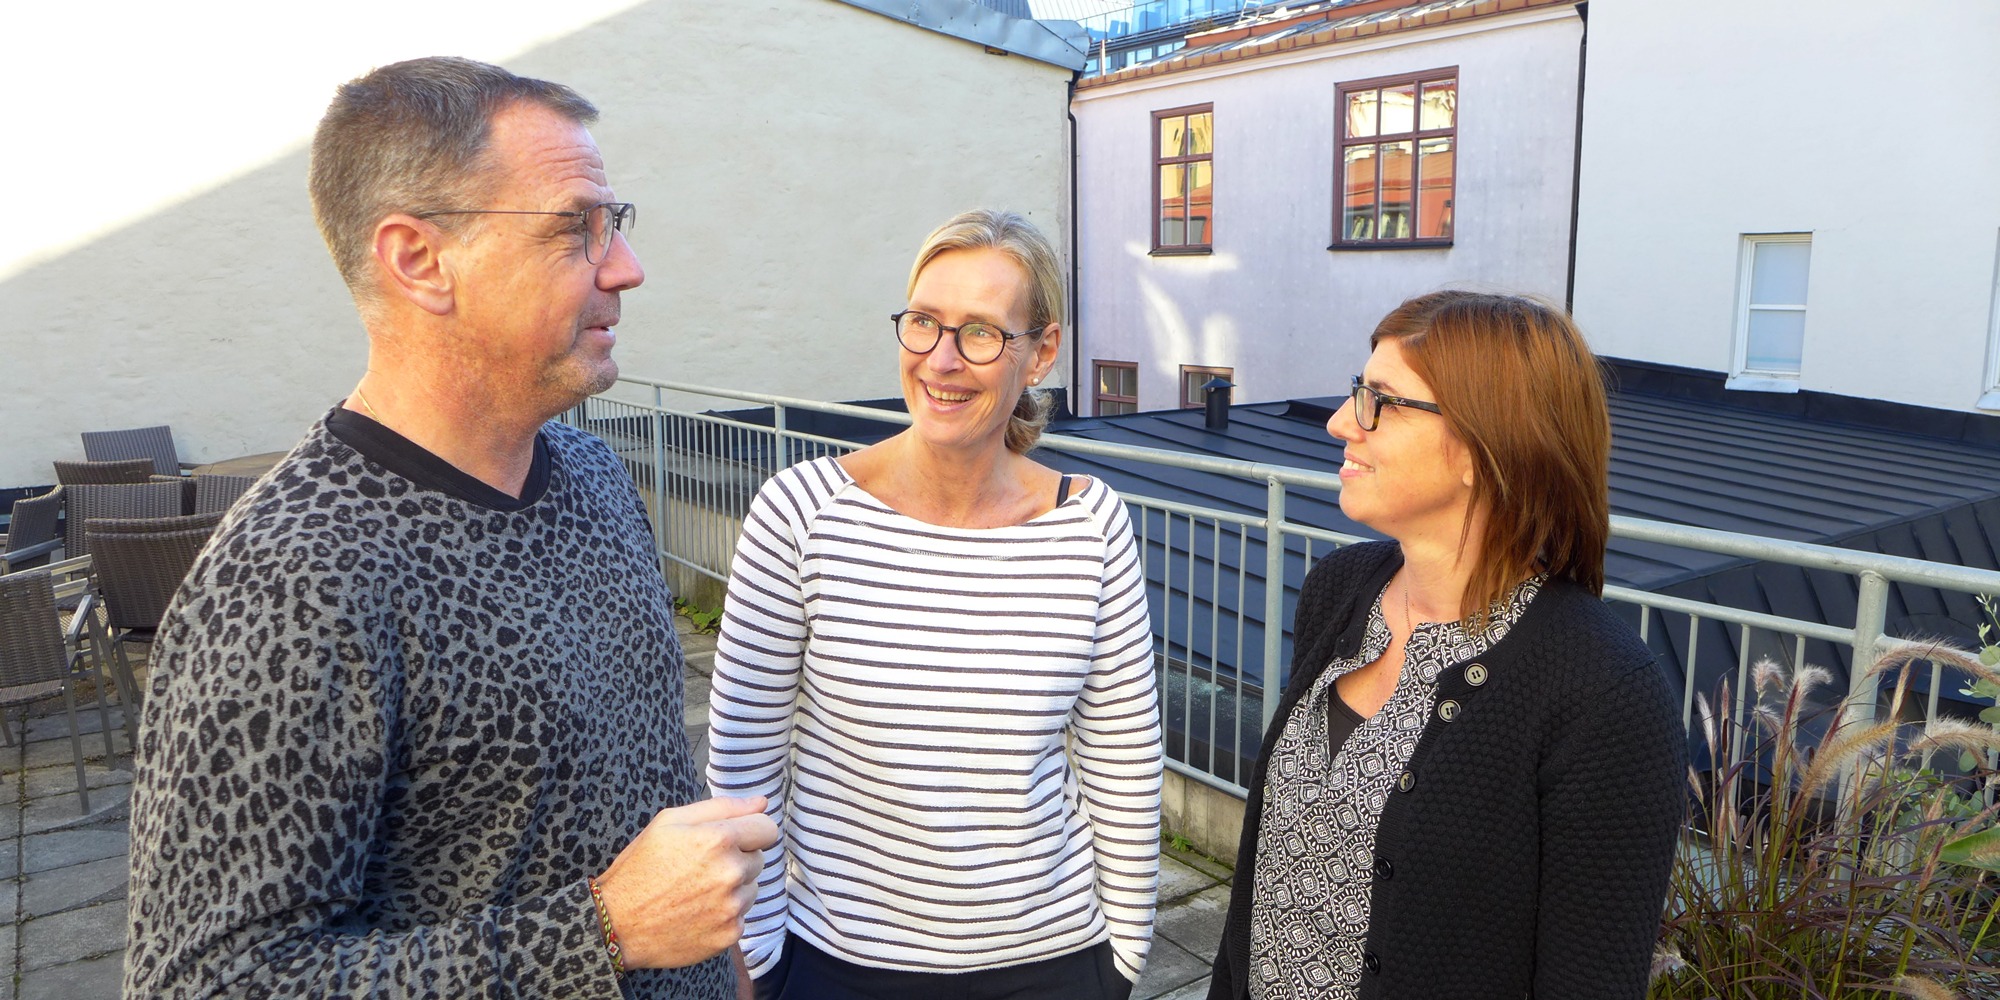 Johan Mellnäs, Petra Salino och Stina Ellerfelt Sköld samtalar leende med varandra på en terrass med husväggar i bakgrunden.